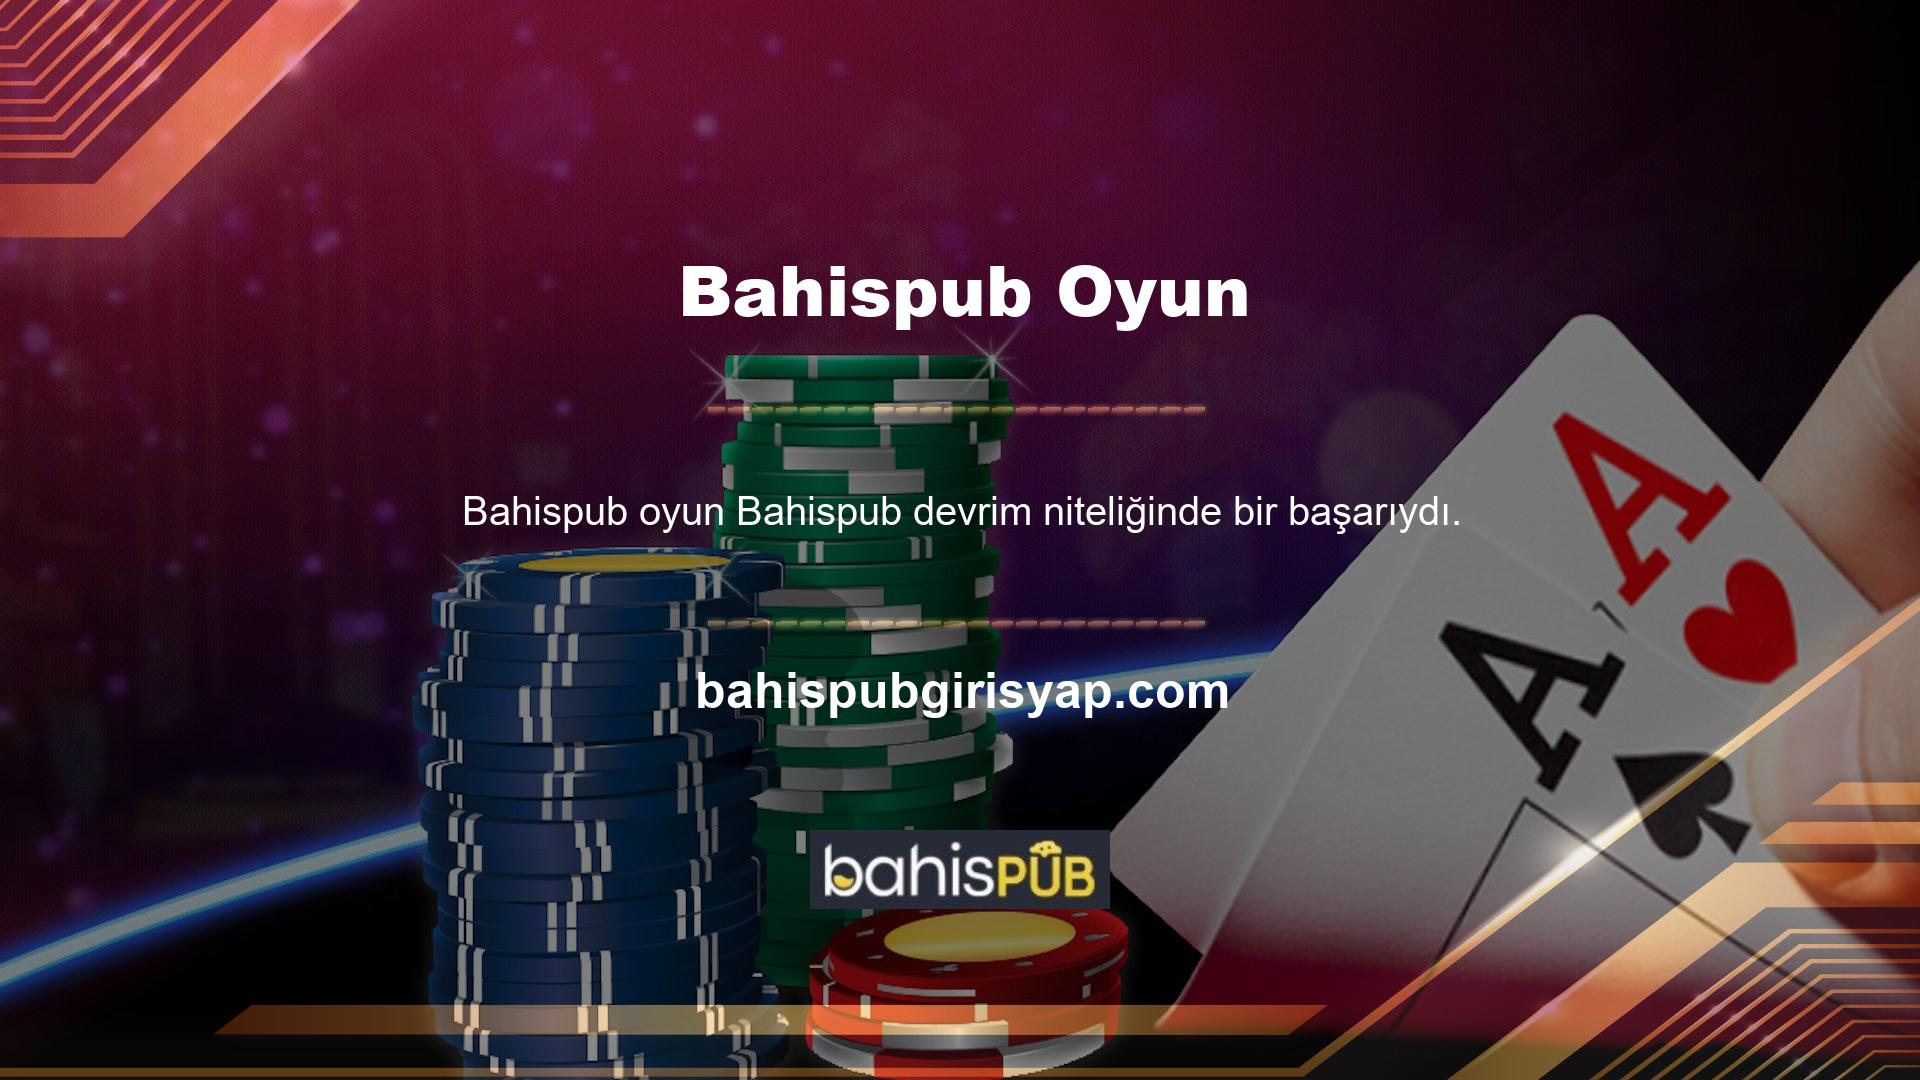 Bahispub, oyun endüstrisindeki müşterileri memnun etmek için yenilik yapmaktan ve yenilik yapmaktan gurur duymaktadır